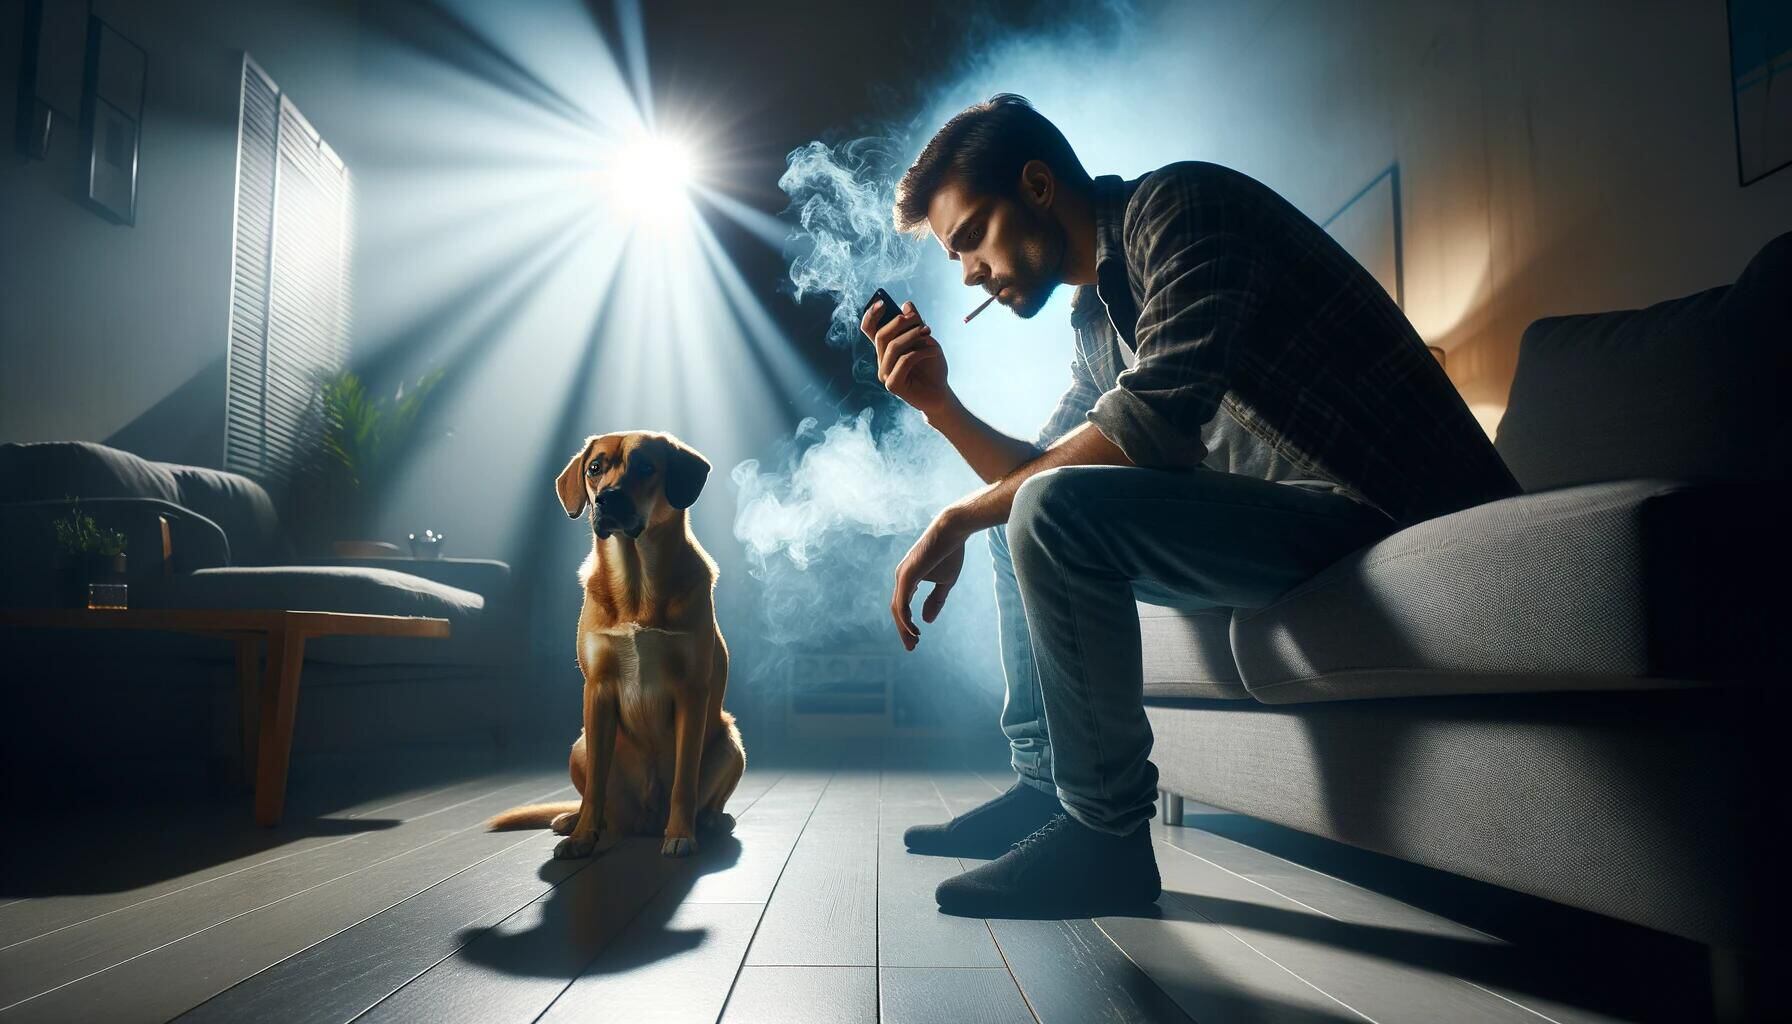 Imagen que representa el impacto del tabaco, donde una mascota muestra tristeza al recibir el humo de segunda mano de su dueño fumador. Ilustración de los riesgos del tabaquismo pasivo. (Imagen ilustrativa Infobae)